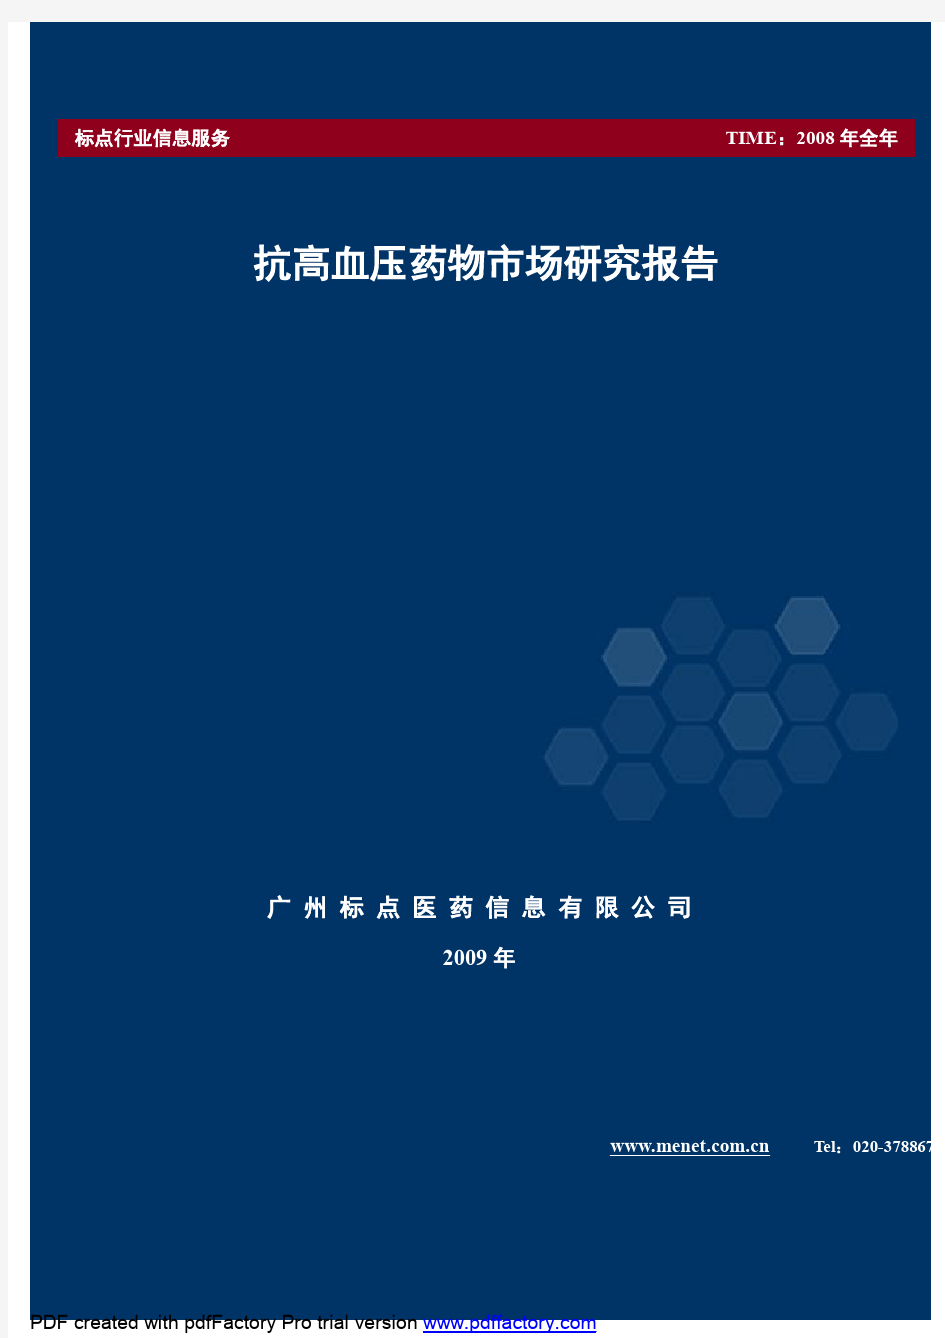 2009年中国抗高血压药物市场调查研究报告(75P)